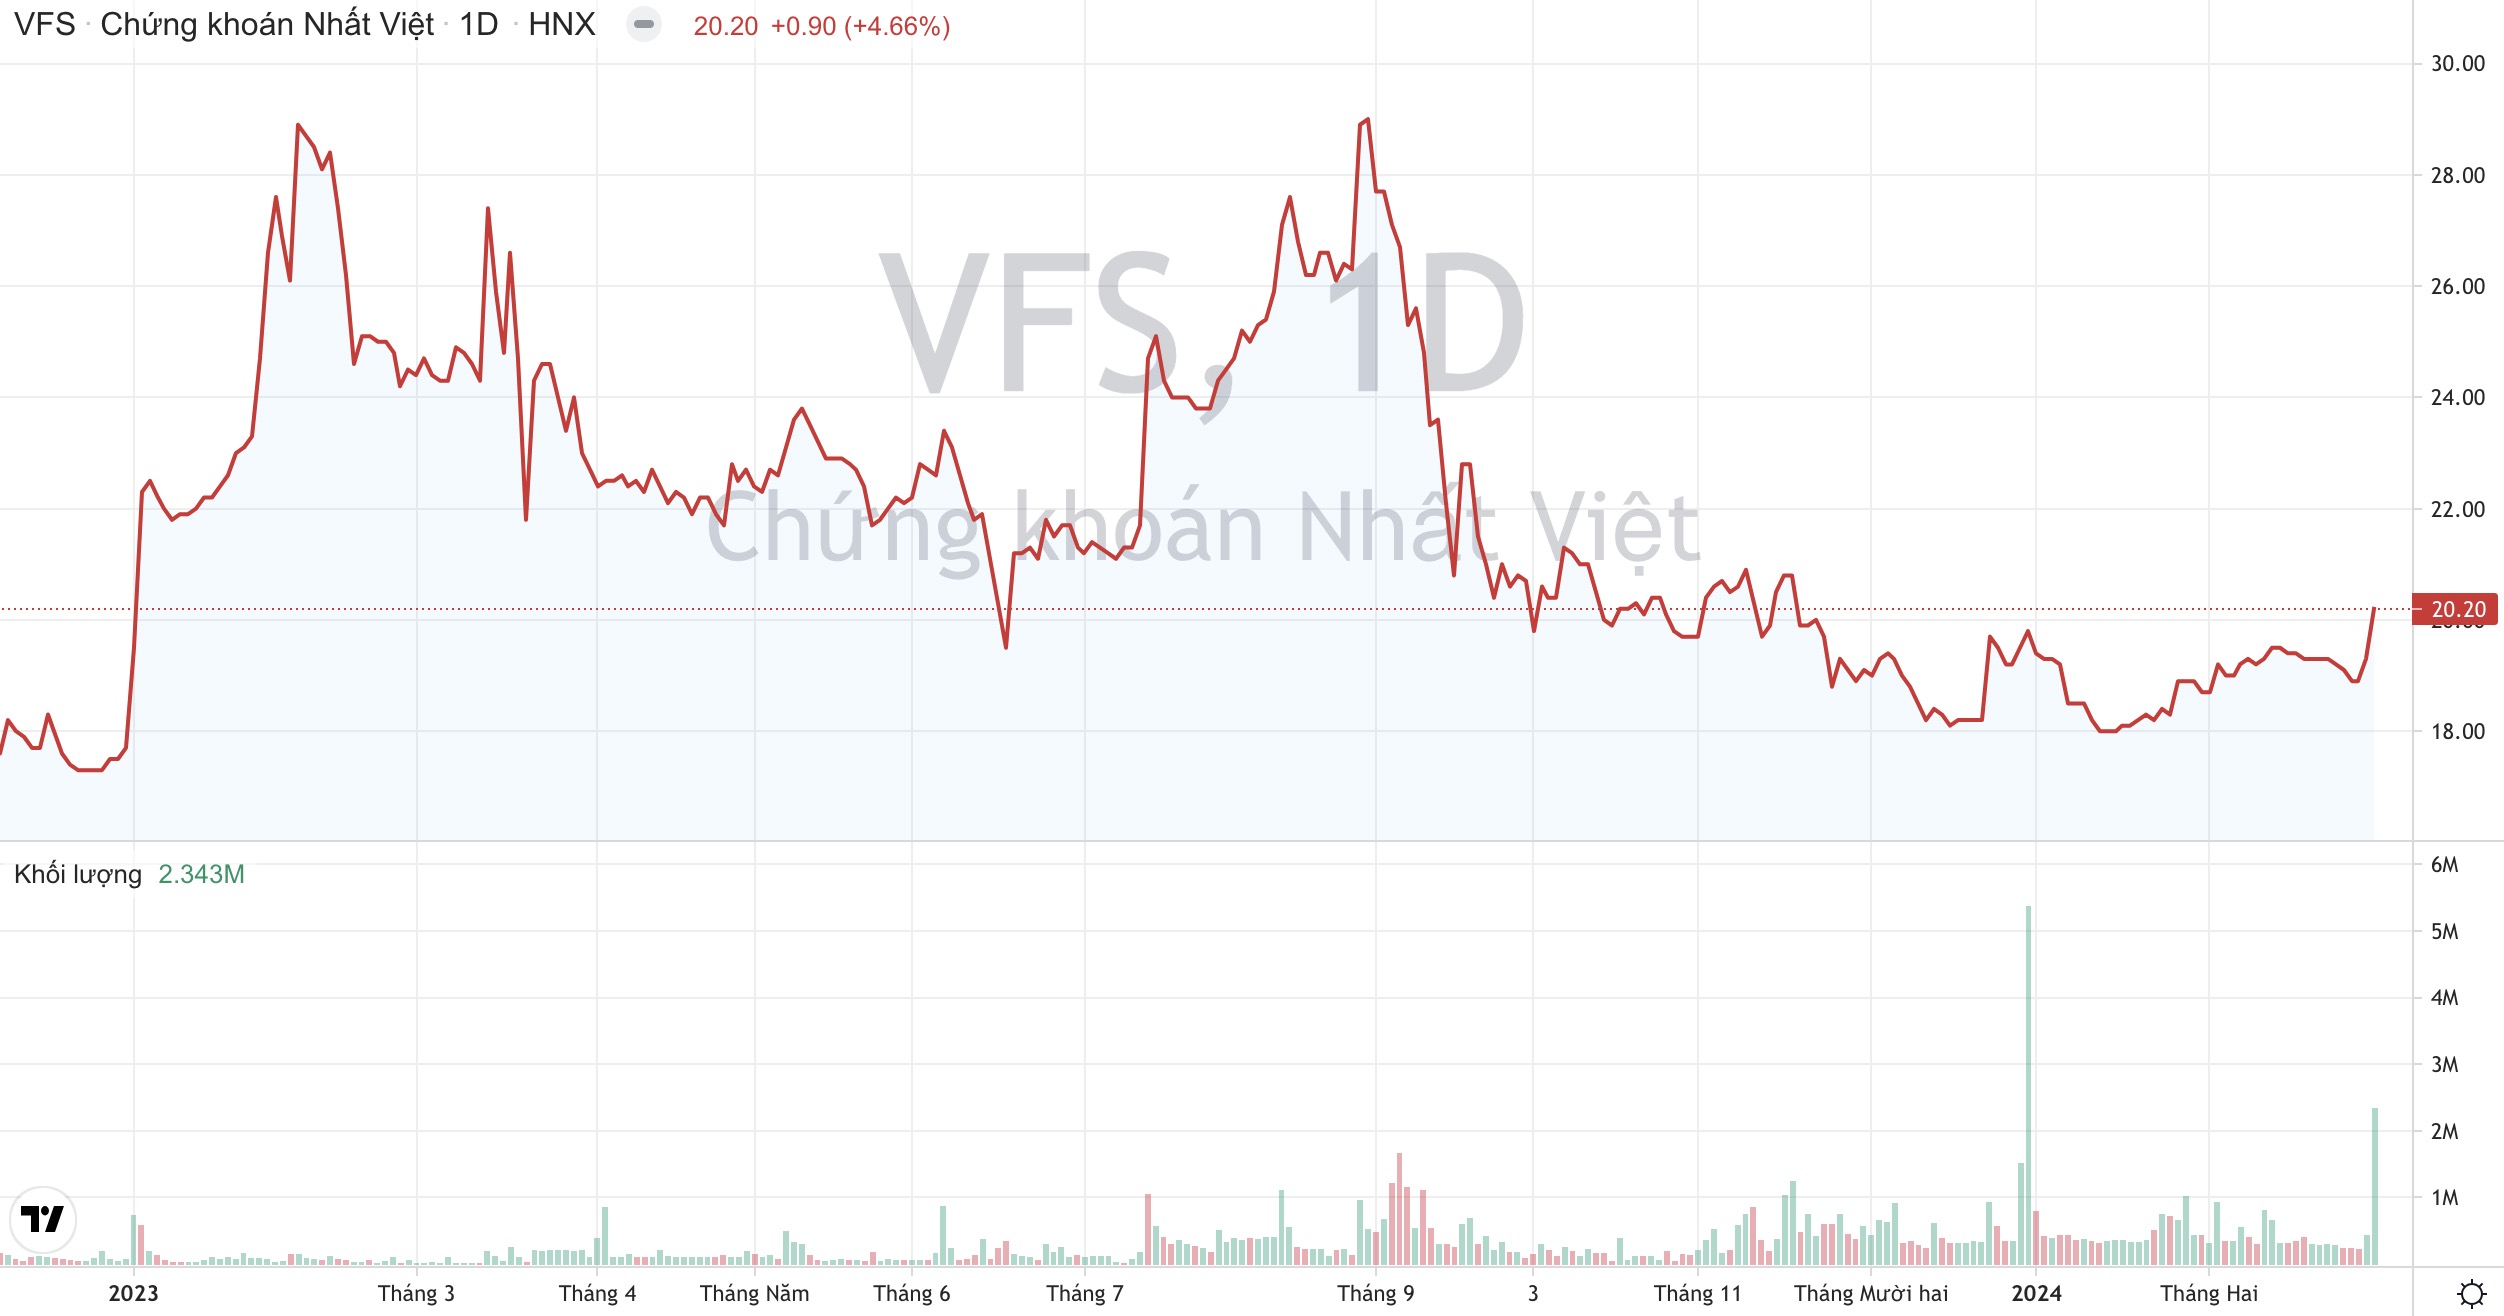 Chứng khoán Nhất Việt (VFS) muốn chào bán 120 triệu cổ phiếu, tăng vốn lên gấp đôi